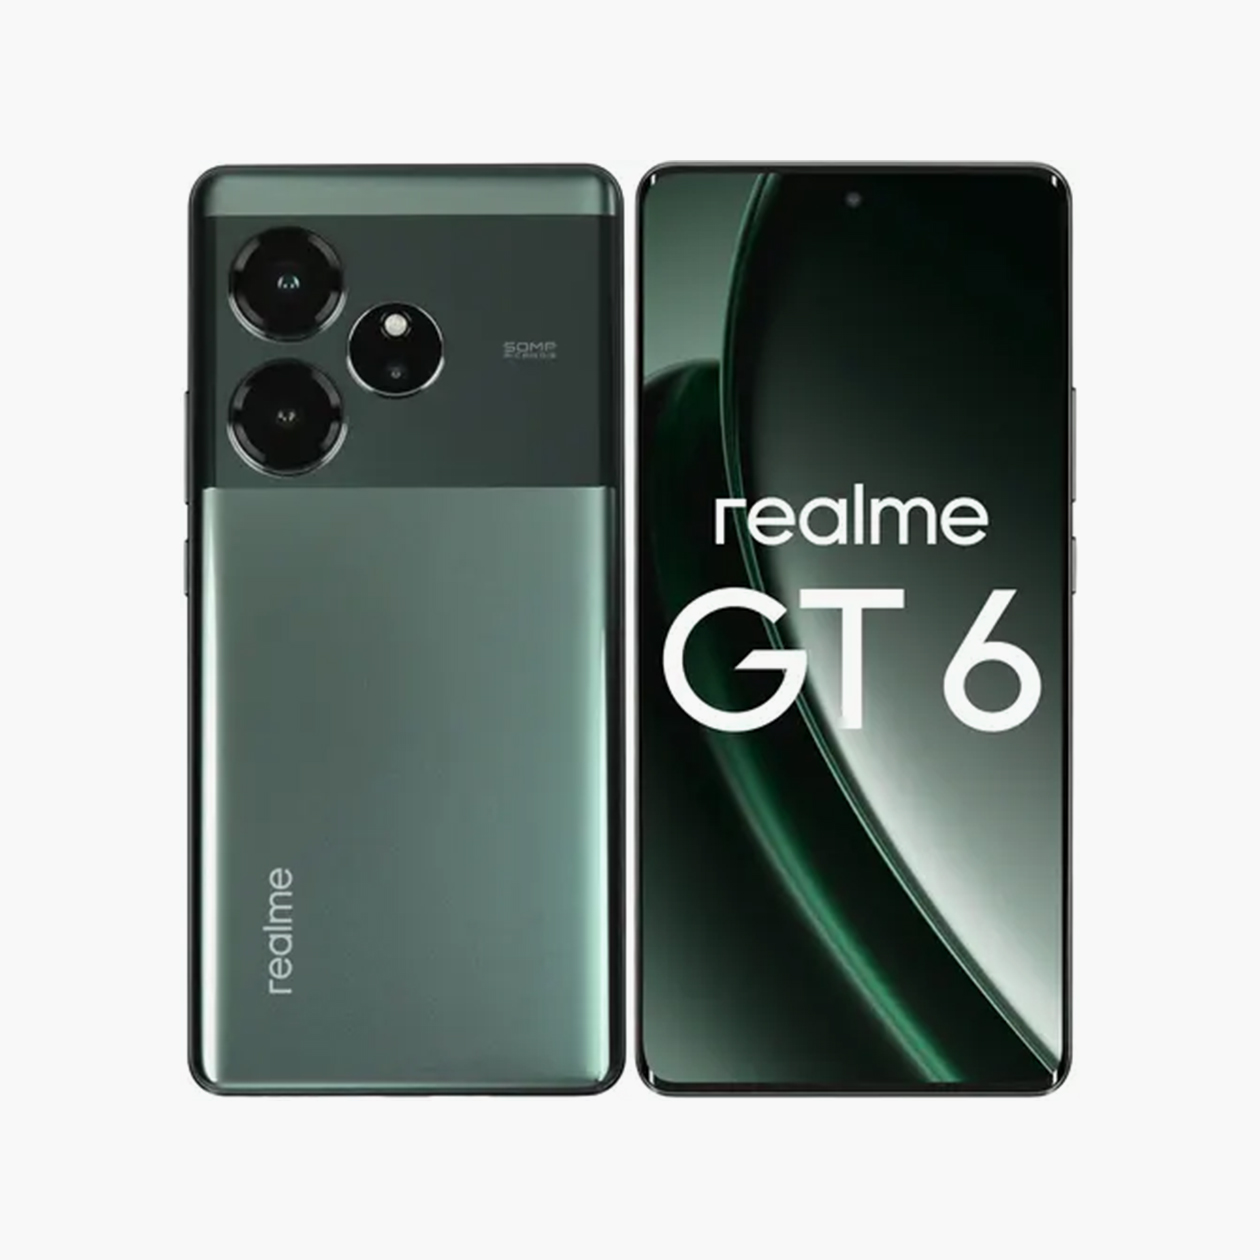 А это Realme GT 6. У него загнутый по краям экран и глянцевая «подложка» под камеру без светодиодного прямоугольника